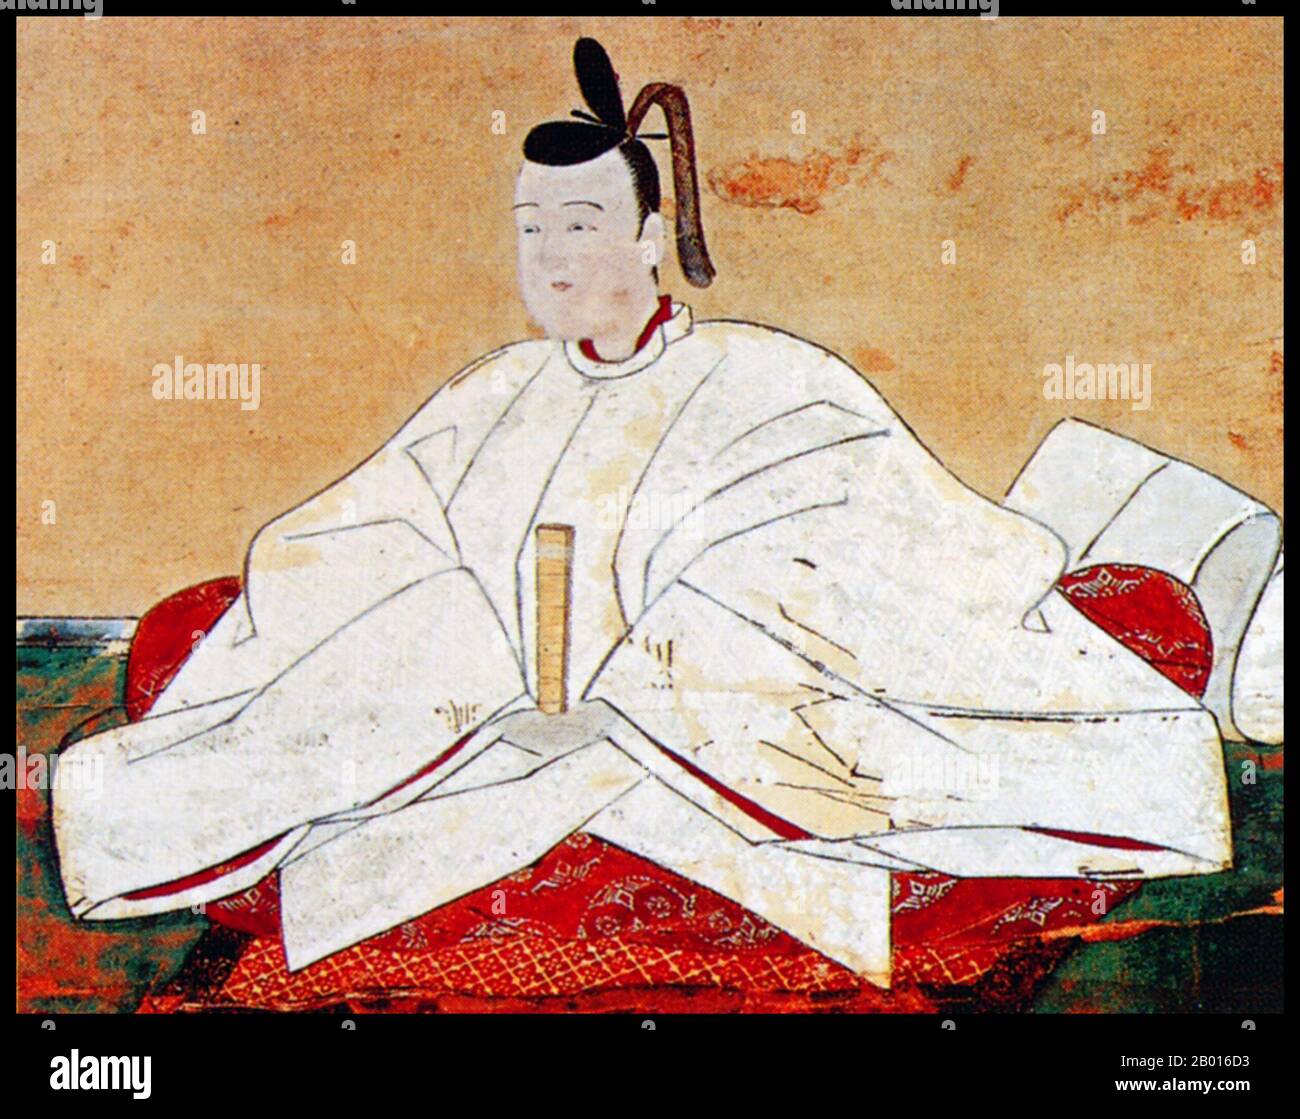 Japan: Toyotomi Hideyori (8. September 1593 - 5. Juni 1615), Sohn und Nachfolger von Toyotomi Hideyoshi. Hängende Schriftrolle Malerei, 17. Jahrhundert. Toyotomi Hideyori war der Sohn und designierte Nachfolger von Toyotomi Hideyoshi, dem General, der zuerst ganz Japan Vereinigte. Seine Mutter, Yodo-dono, war die Nichte von Oda Nobunaga. Als Hideyoshi 1598 starb, begannen die Regenten, die er an Hideyoris Stelle regieren ließ, untereinander um die Macht zu joketieren. Tokugawa Ieyasu übernahm 1600 die Kontrolle, und Tokugawa-Truppen griffen Hideyori bei der Belagerung von Osaka an. Hideyori und seine Mutter begingen Seppuku. Stockfoto